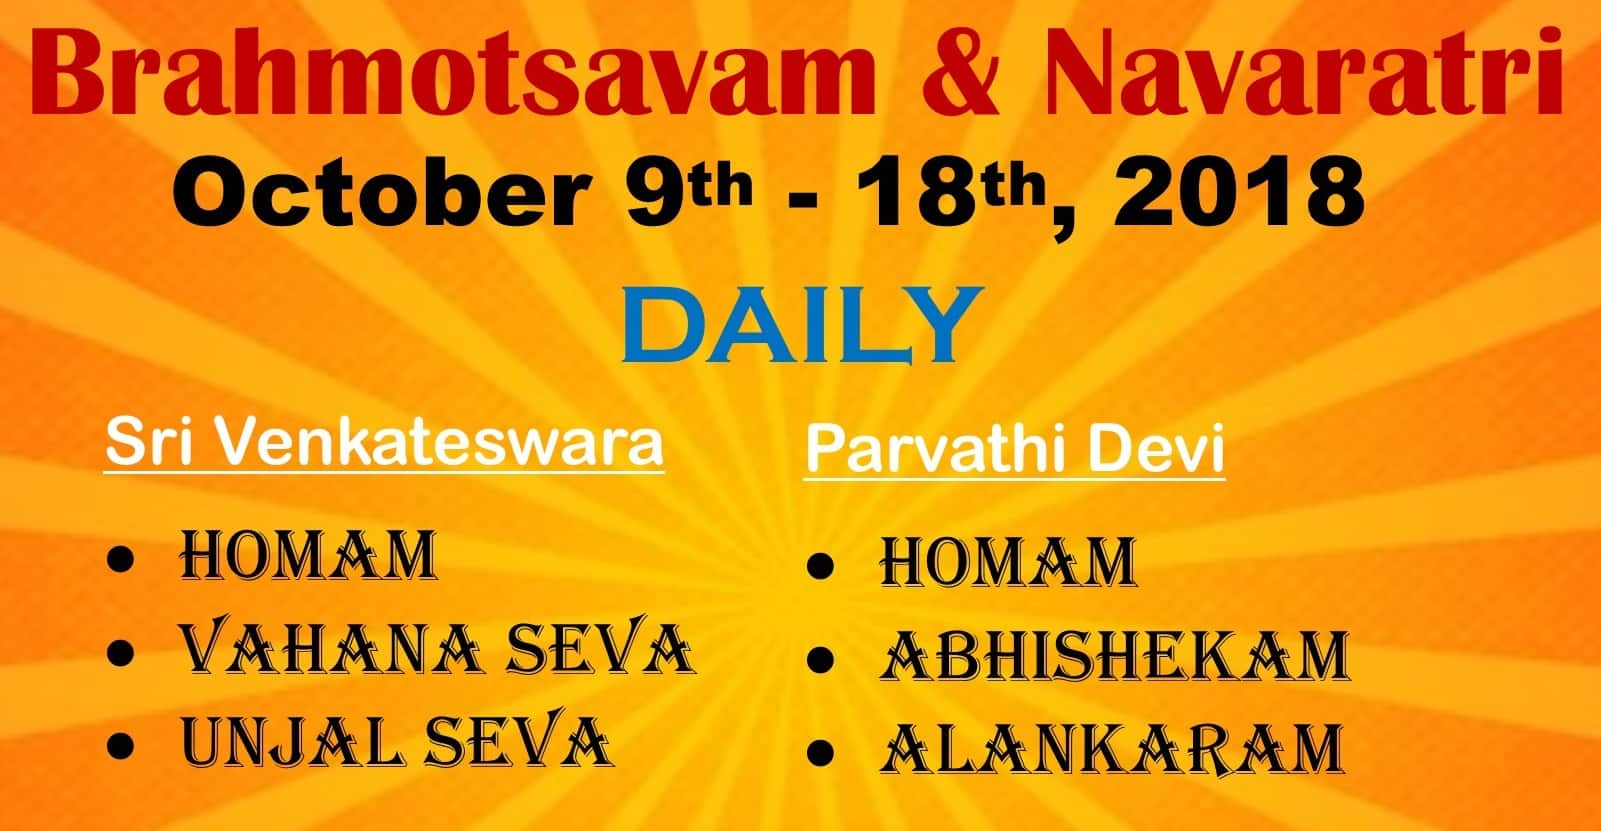 Brahmotsavam & Navaratri at ICCT